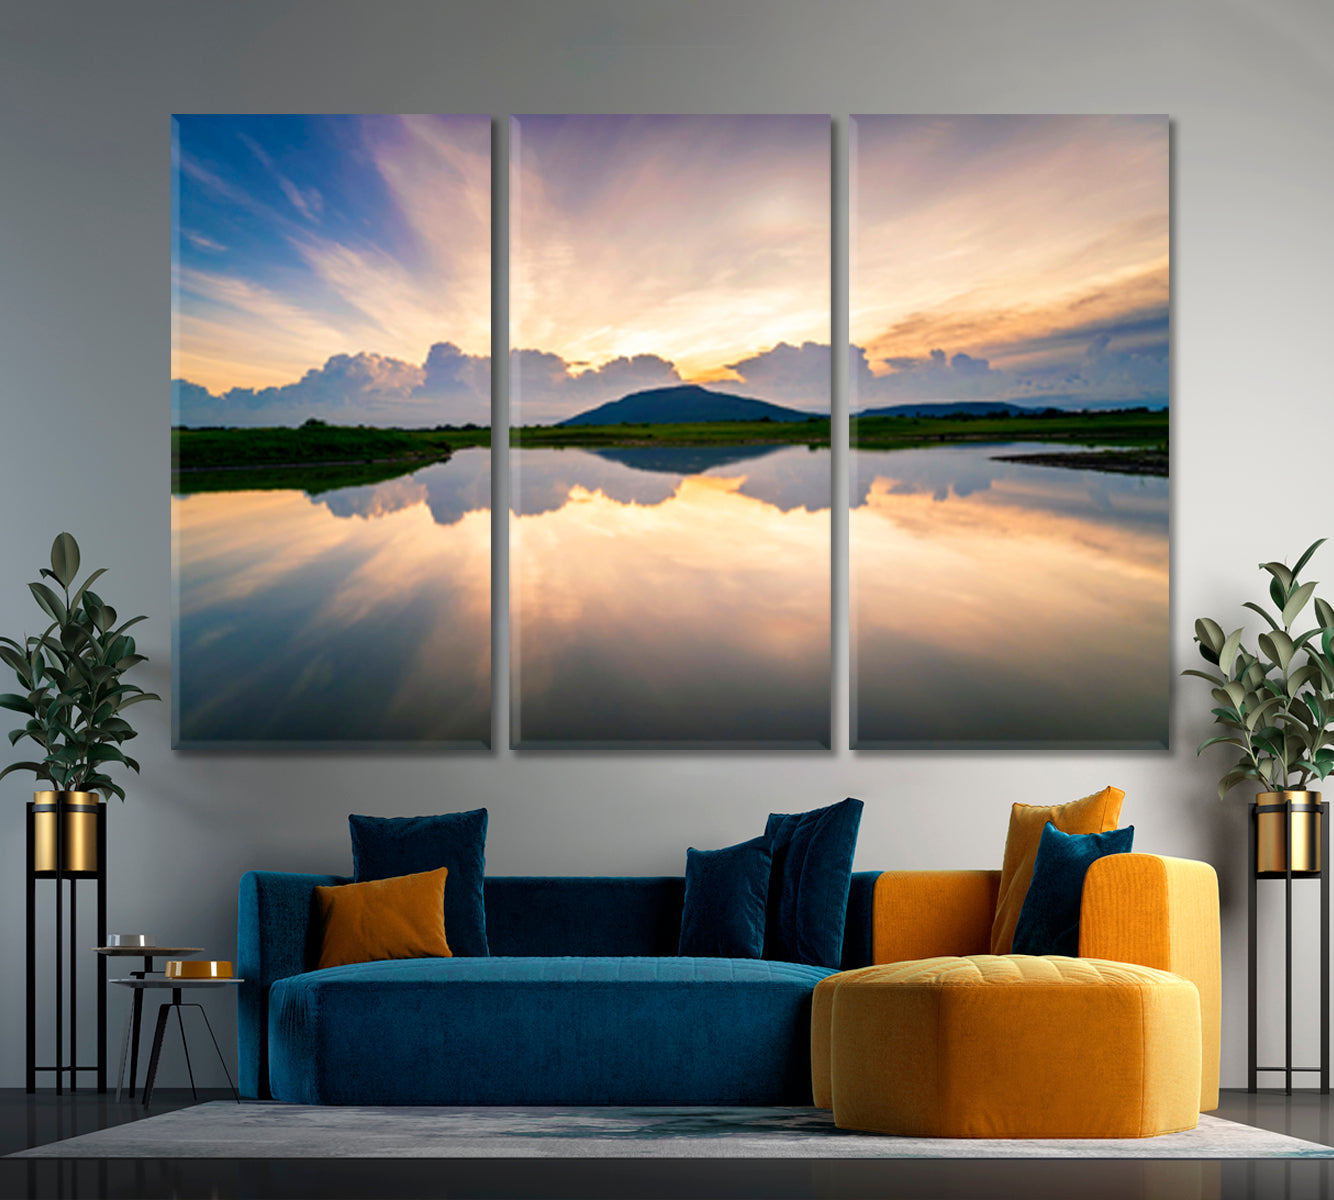 WATER REFLECTION Lake Landscape Beautiful Sunset Sky Nature Wall Canvas Print Artesty 3 panels 36" x 24" 